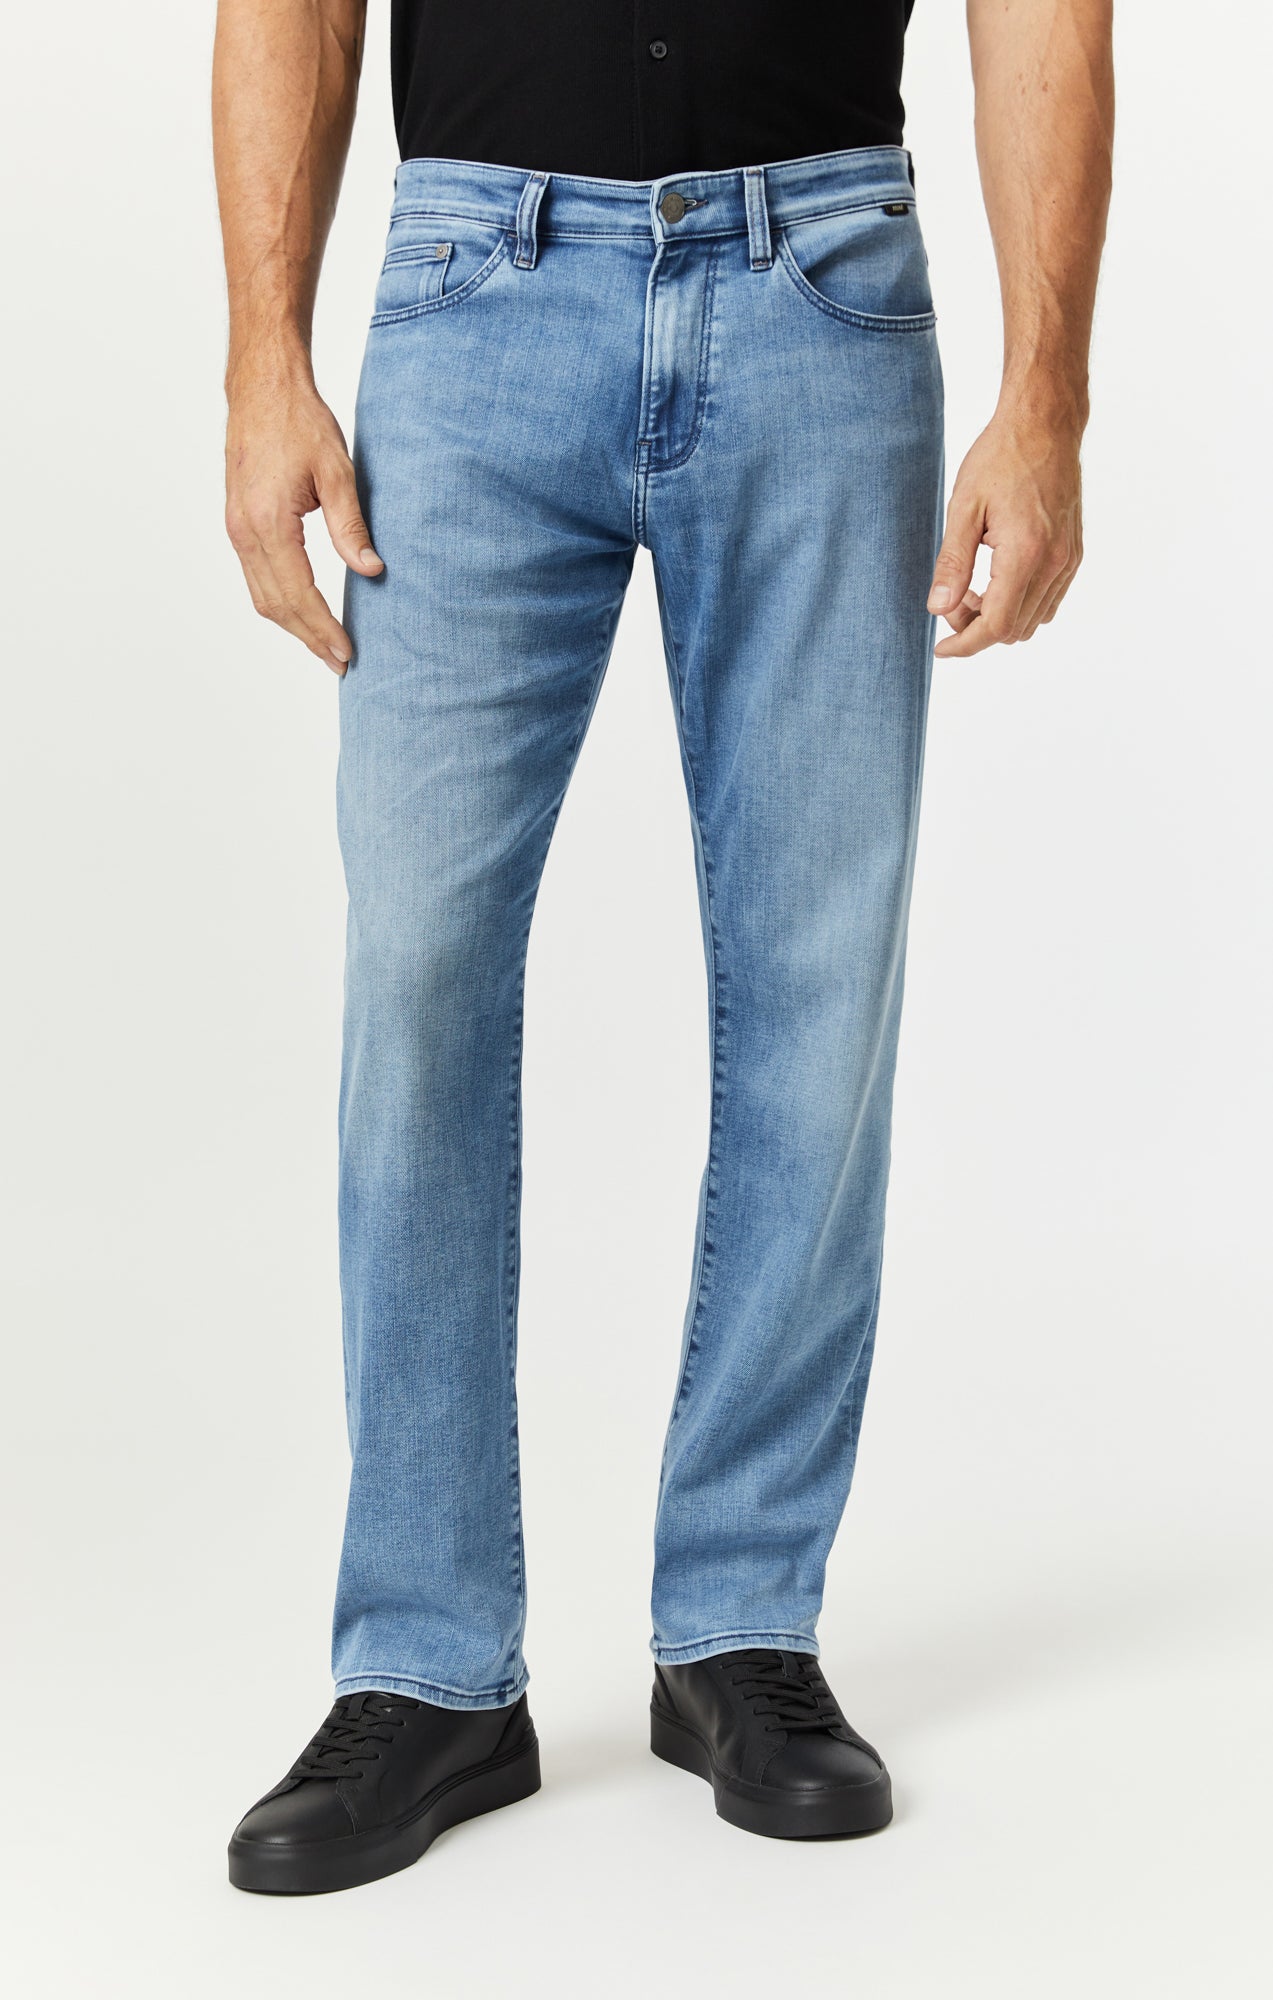 Straight Leg Jeans for Men, Mens Jeans